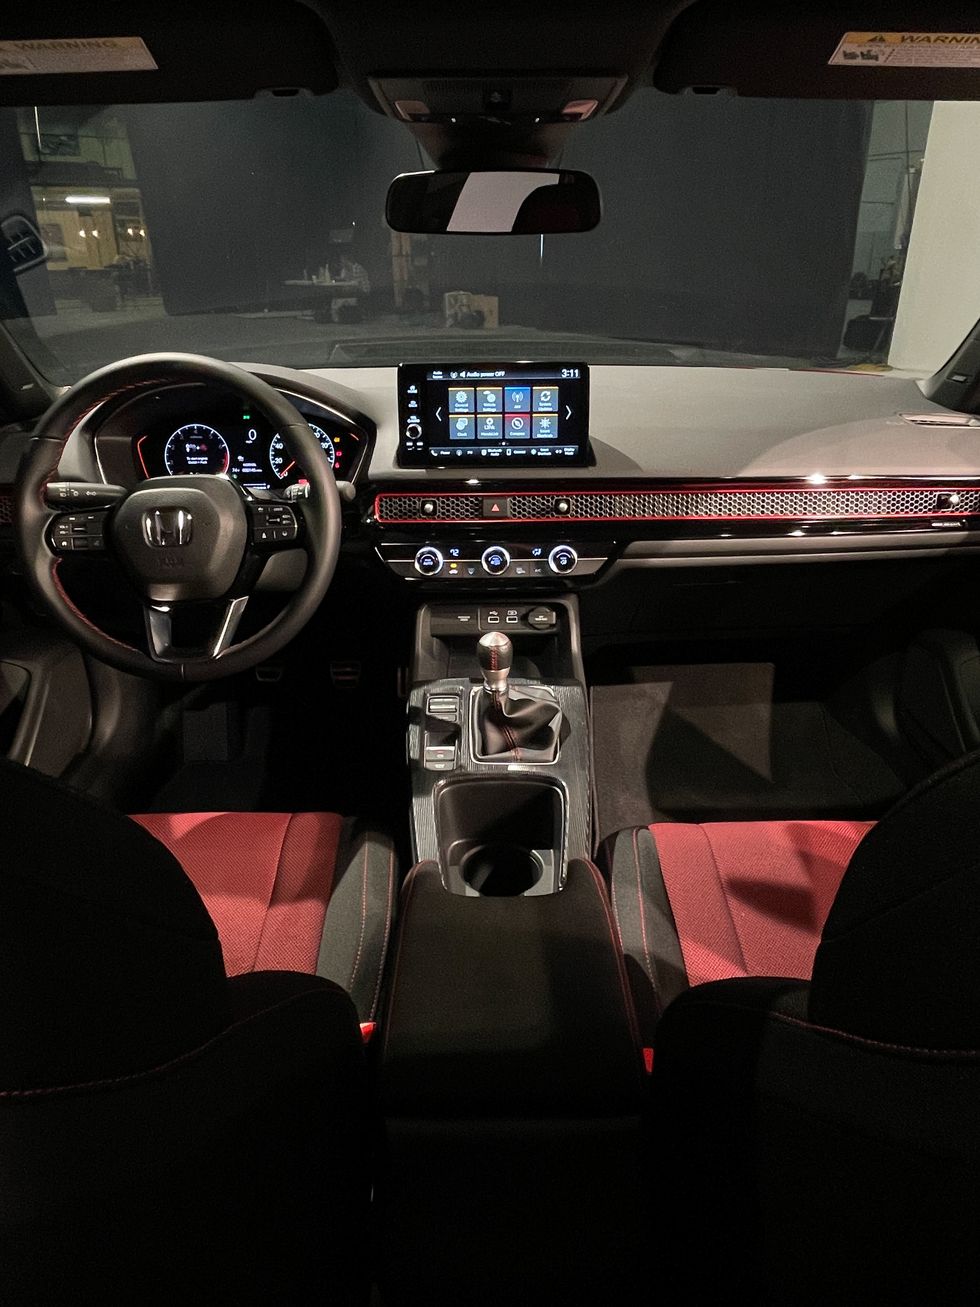 Honda Civic Si 2022: Precios, motor, rendimiento y aspecto deportivo (Imágenes y Videos)